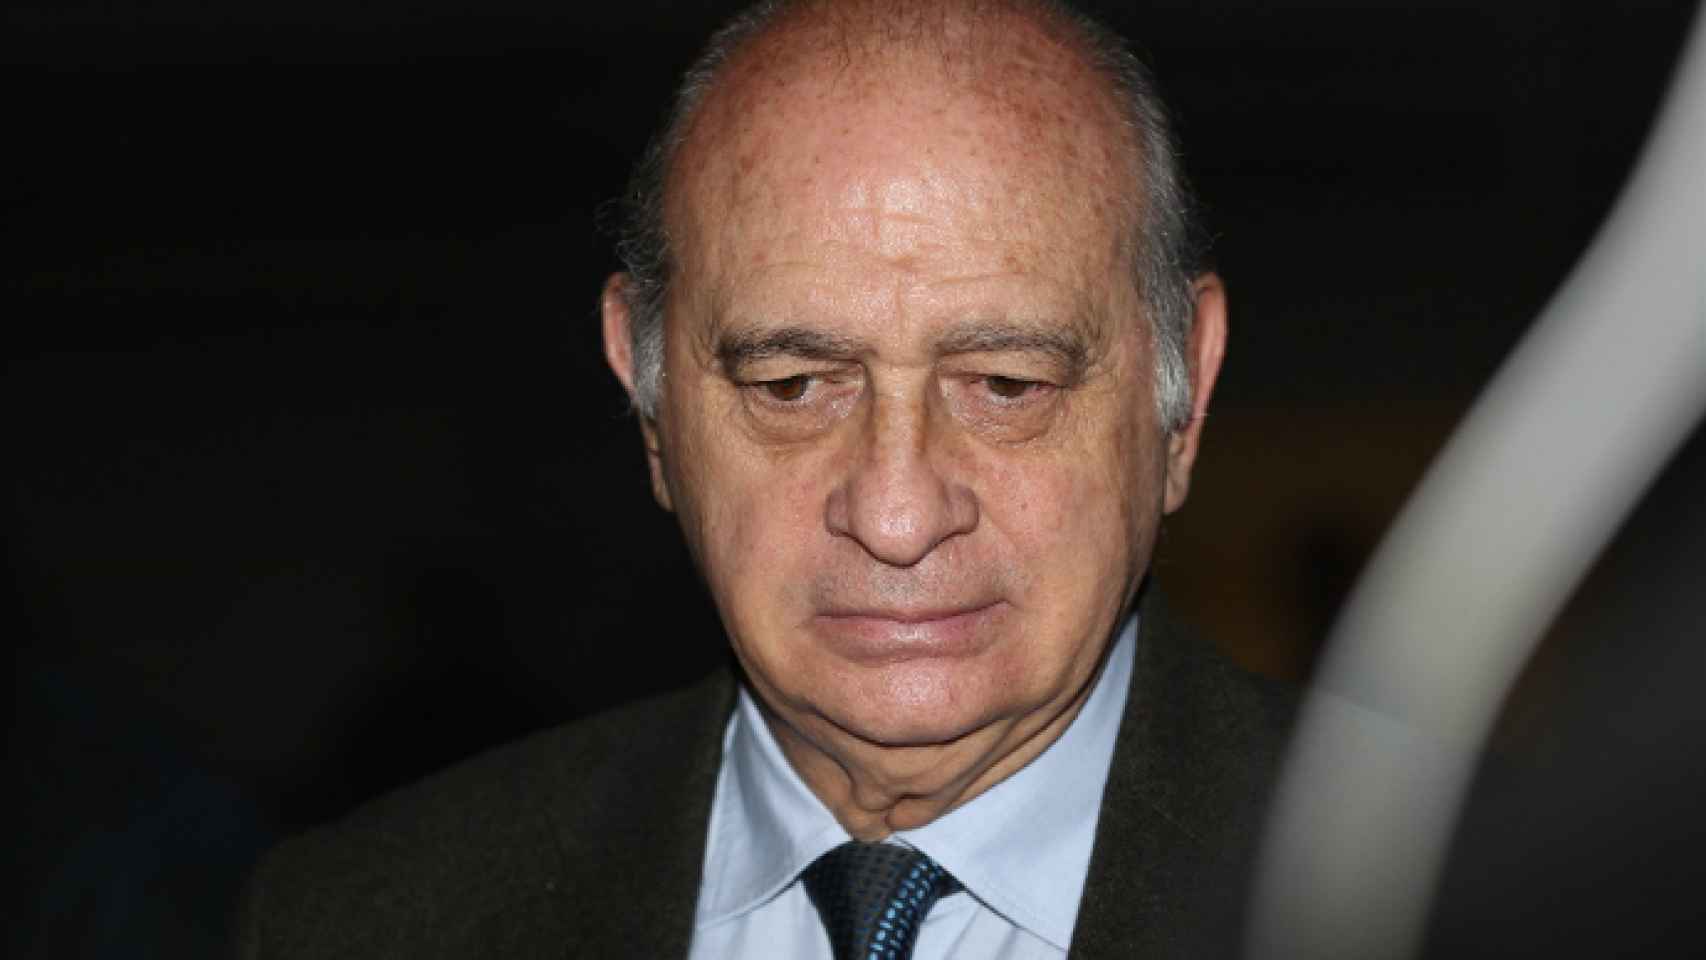 Jorge Fernández Díaz en imagen de archivo.